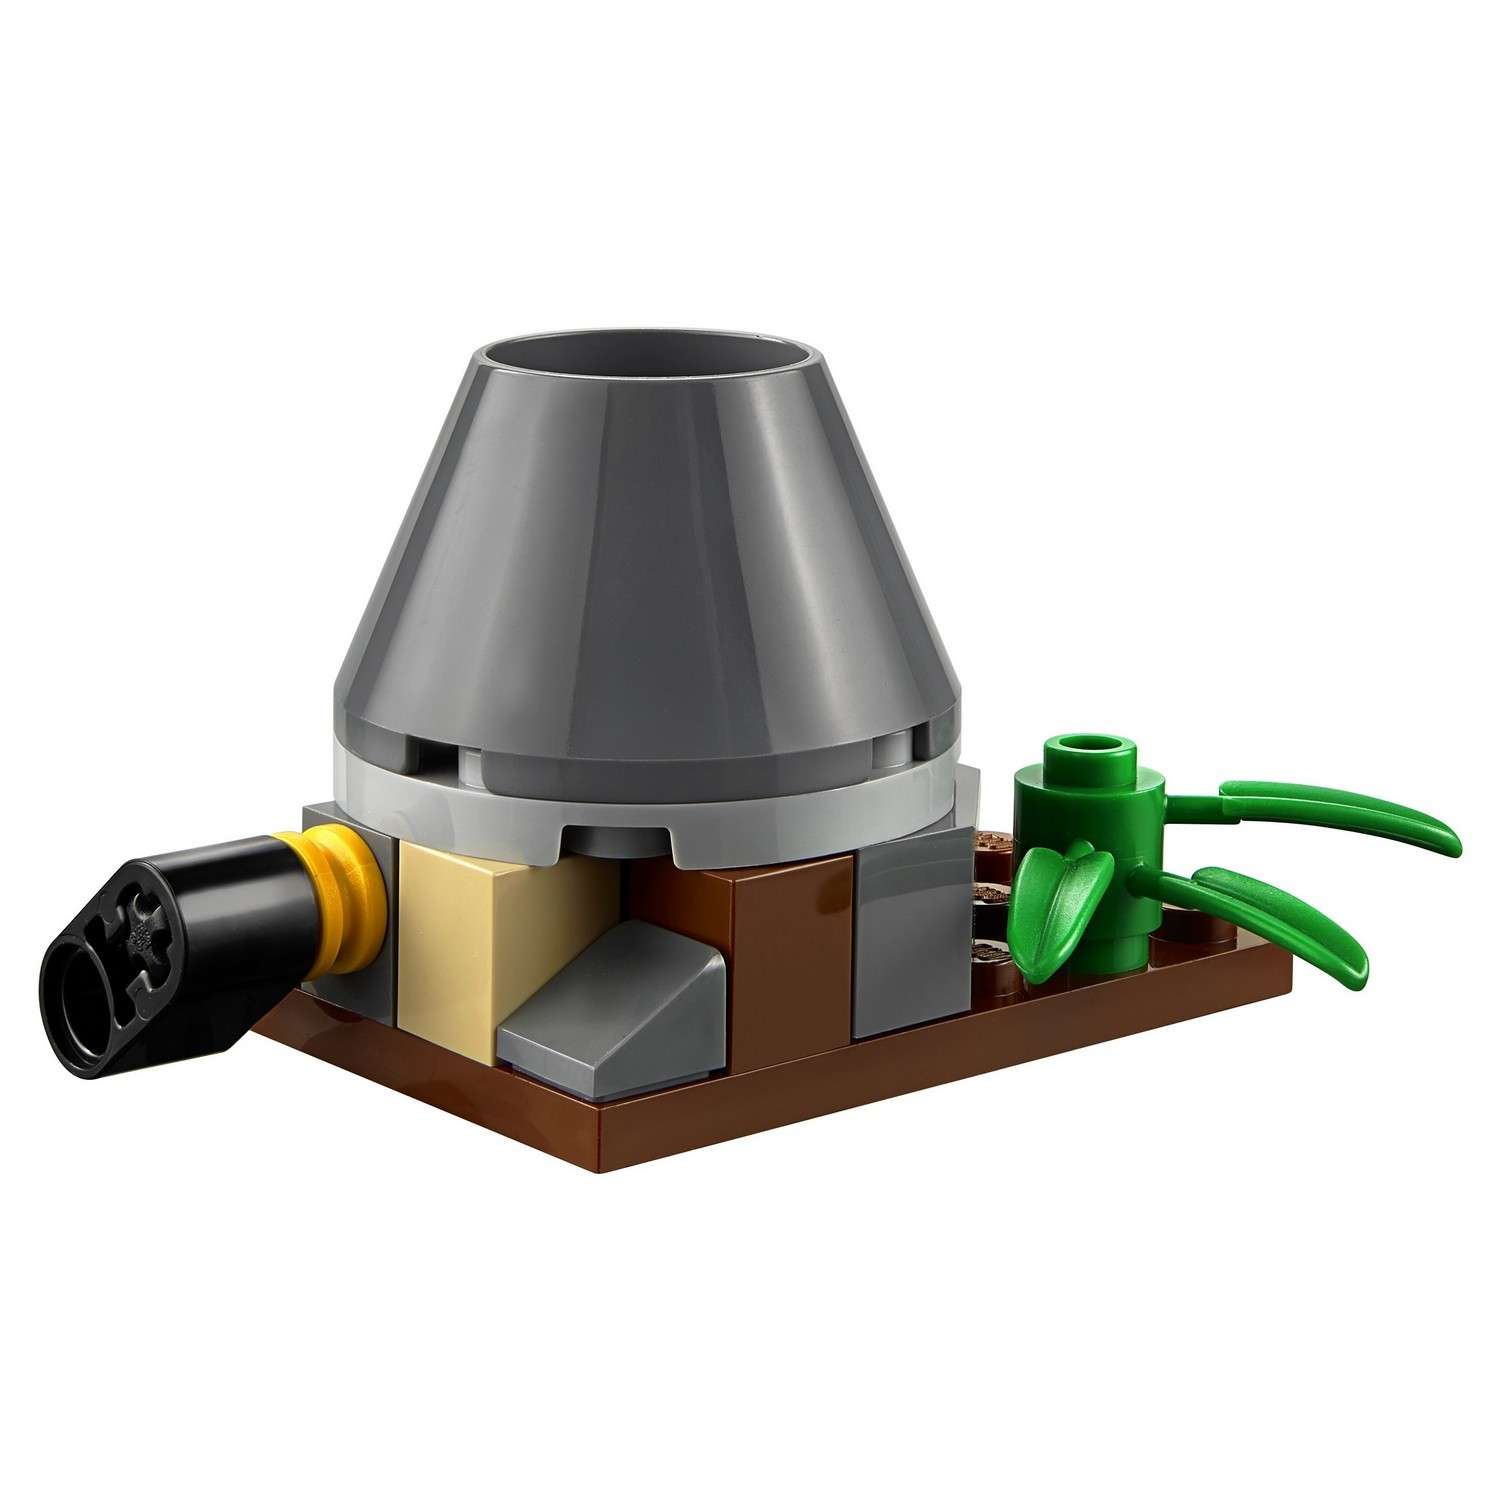 Конструктор LEGO City Volcano Explorers Набор для начинающих "Исследователи Вулканов" (60120) - фото 10